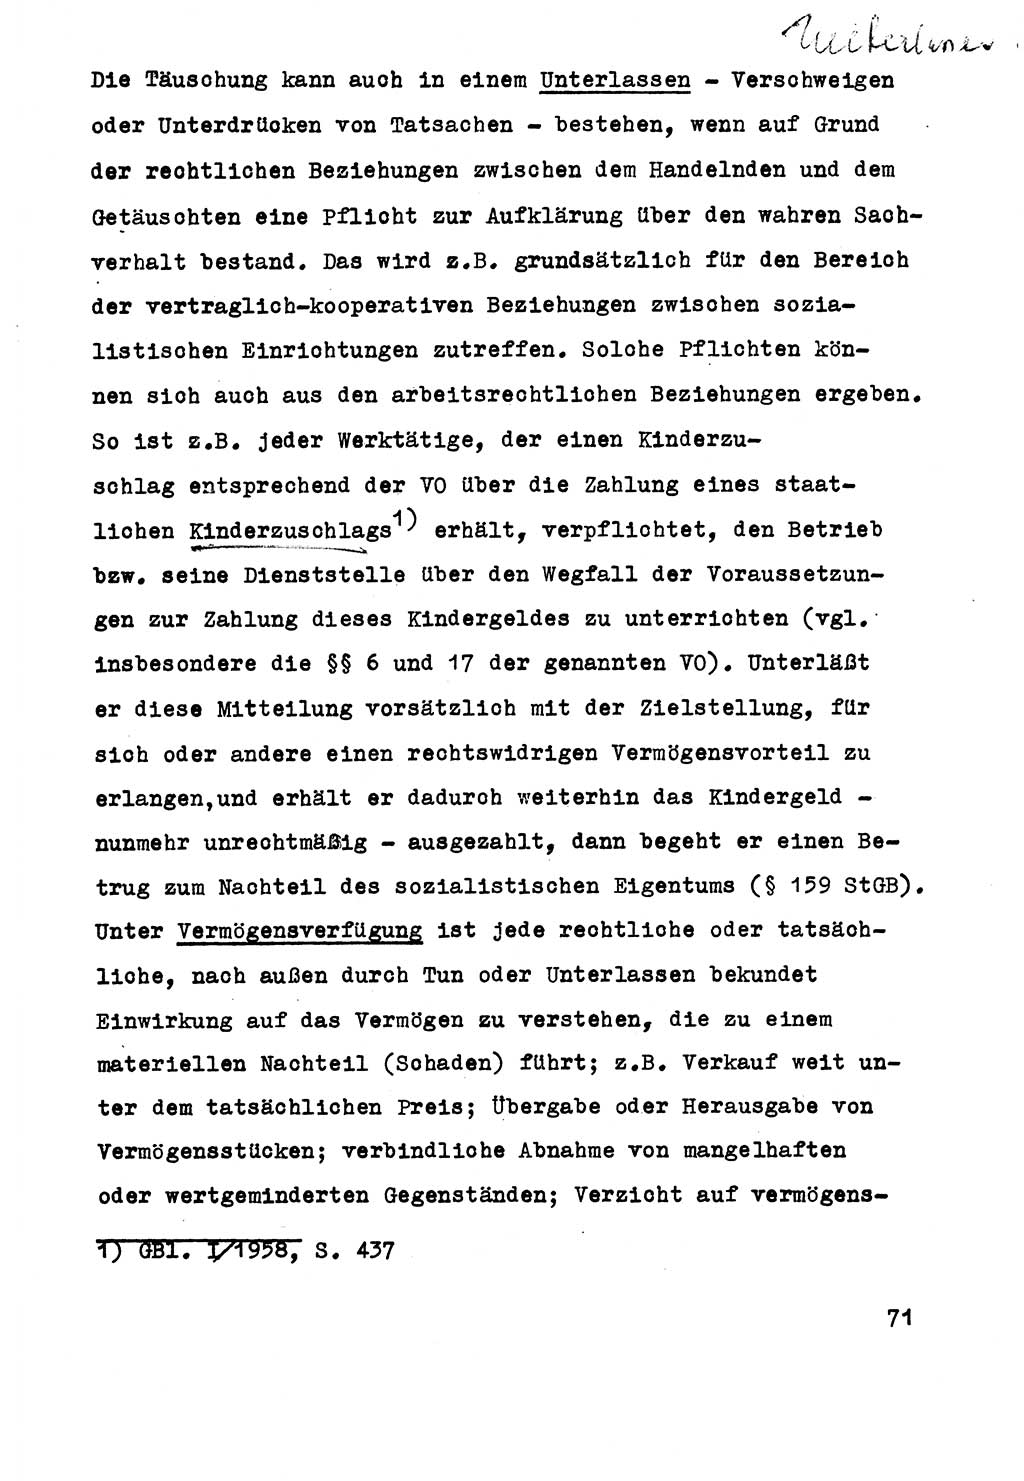 Strafrecht der DDR (Deutsche Demokratische Republik), Besonderer Teil, Lehrmaterial, Heft 5 1970, Seite 71 (Strafr. DDR BT Lehrmat. H. 5 1970, S. 71)